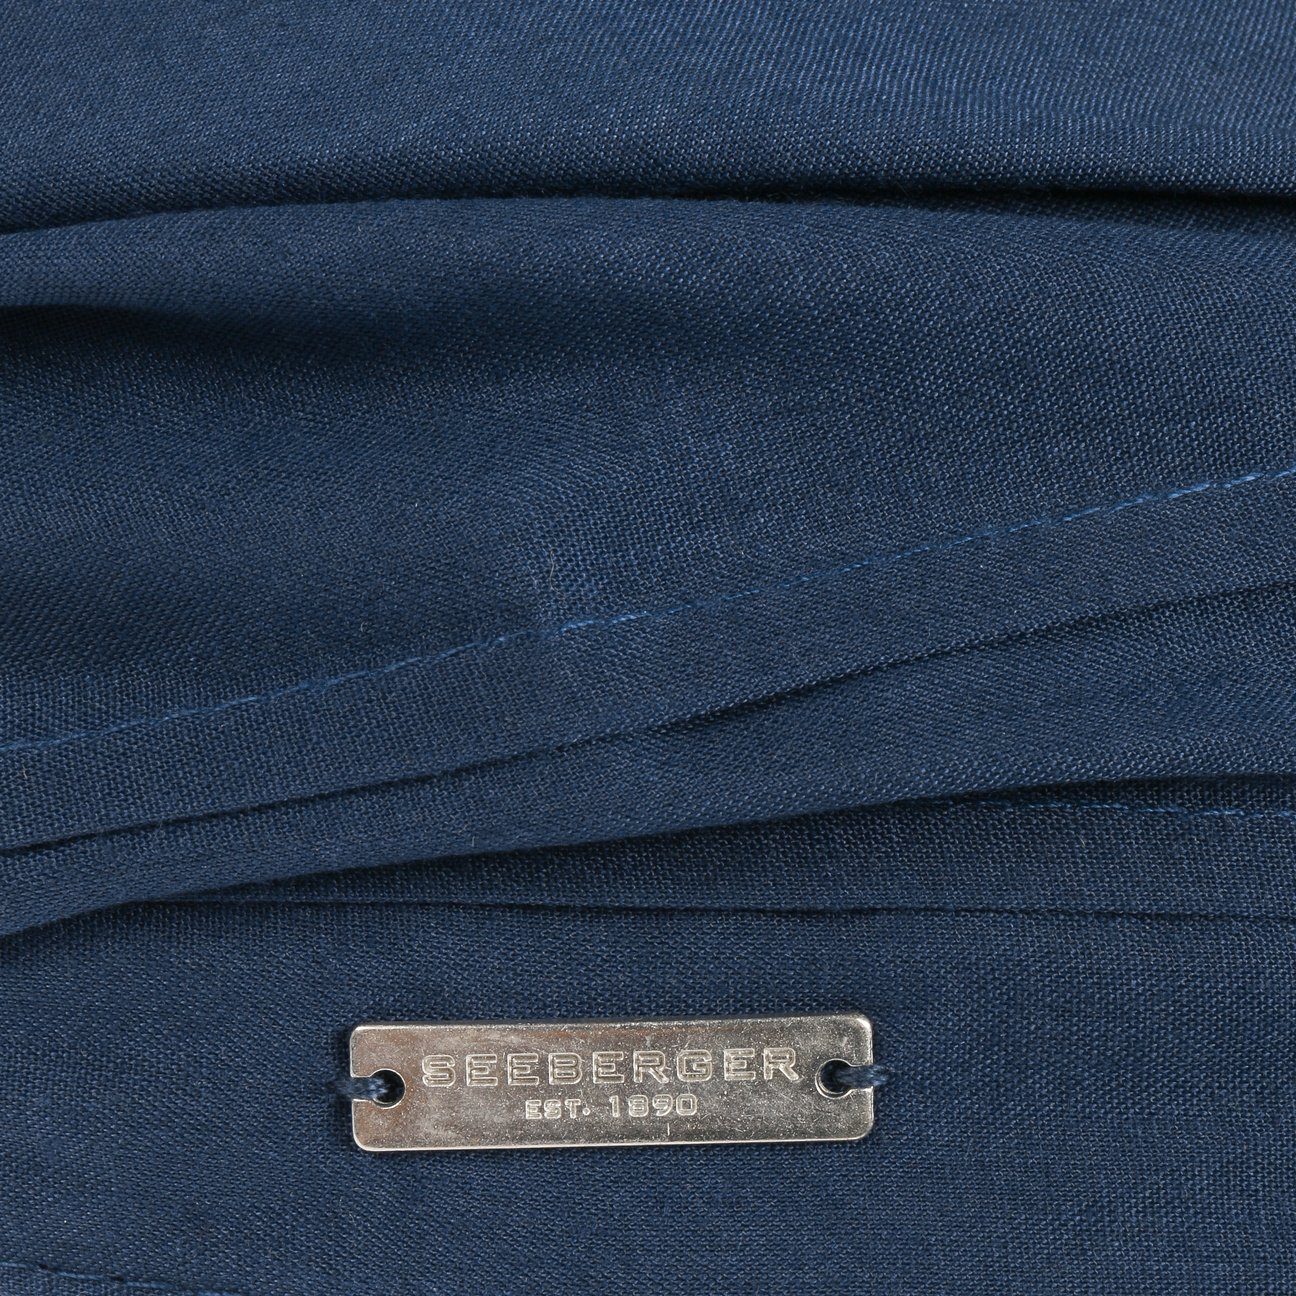 Seeberger Visor (1-St) Strohcap mit dunkelblau Schirm